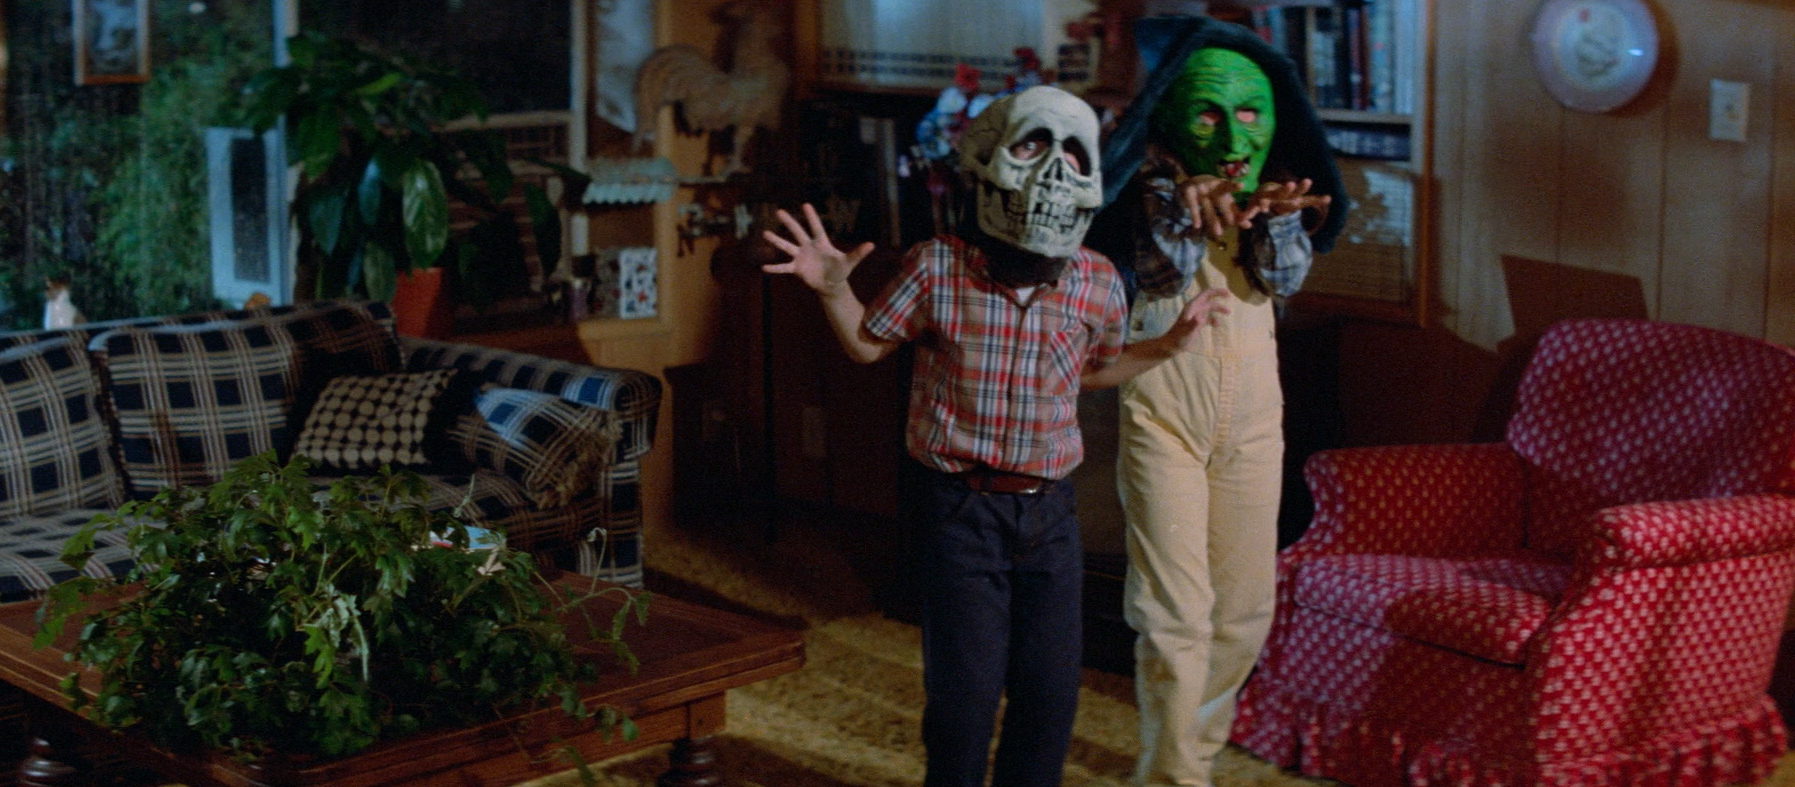 Dr. Challis's Children Wearing Their Halloween Masks